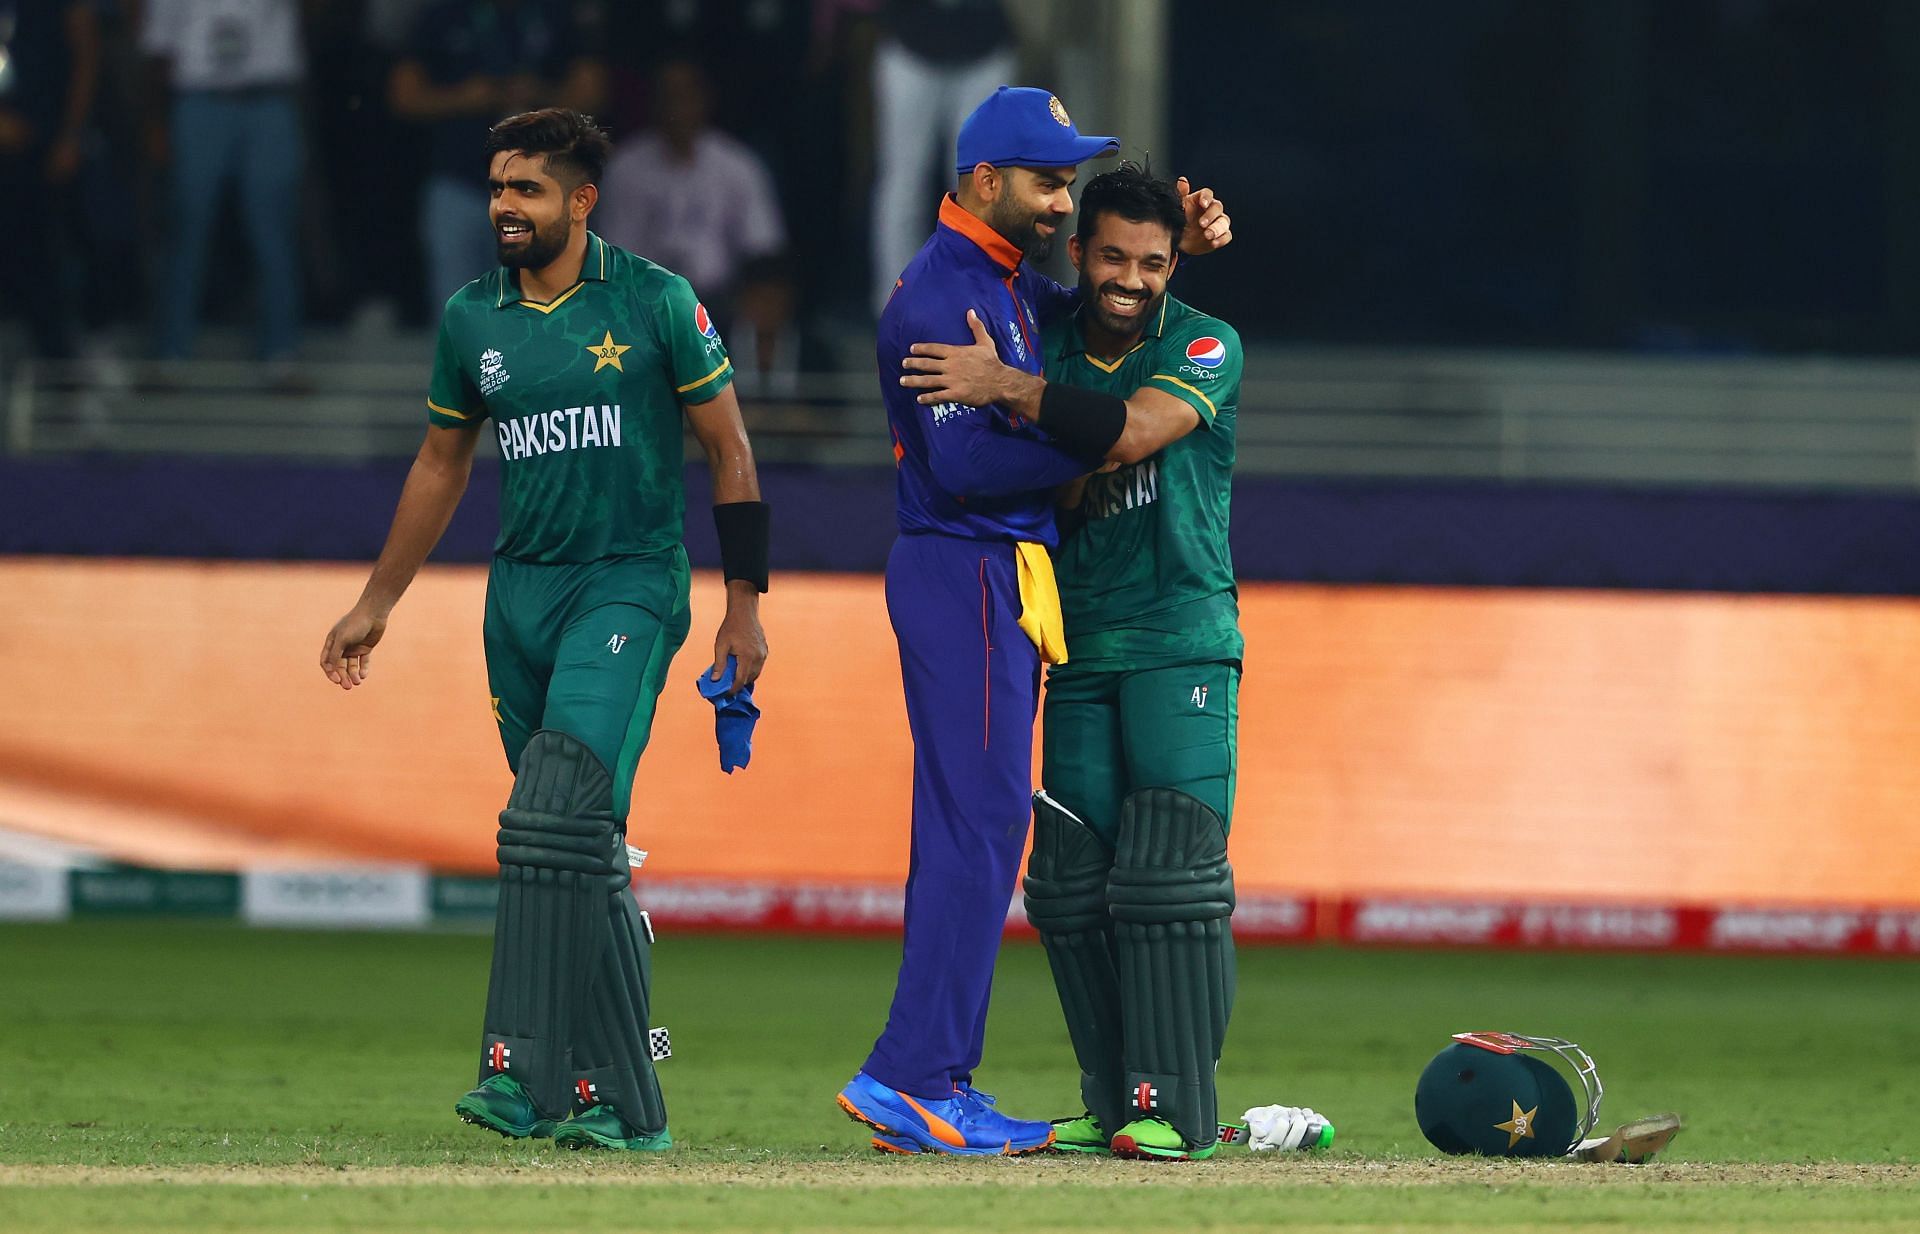 भारत और पाकिस्तान के बीच मैच का इंतजार सभी को रहता है